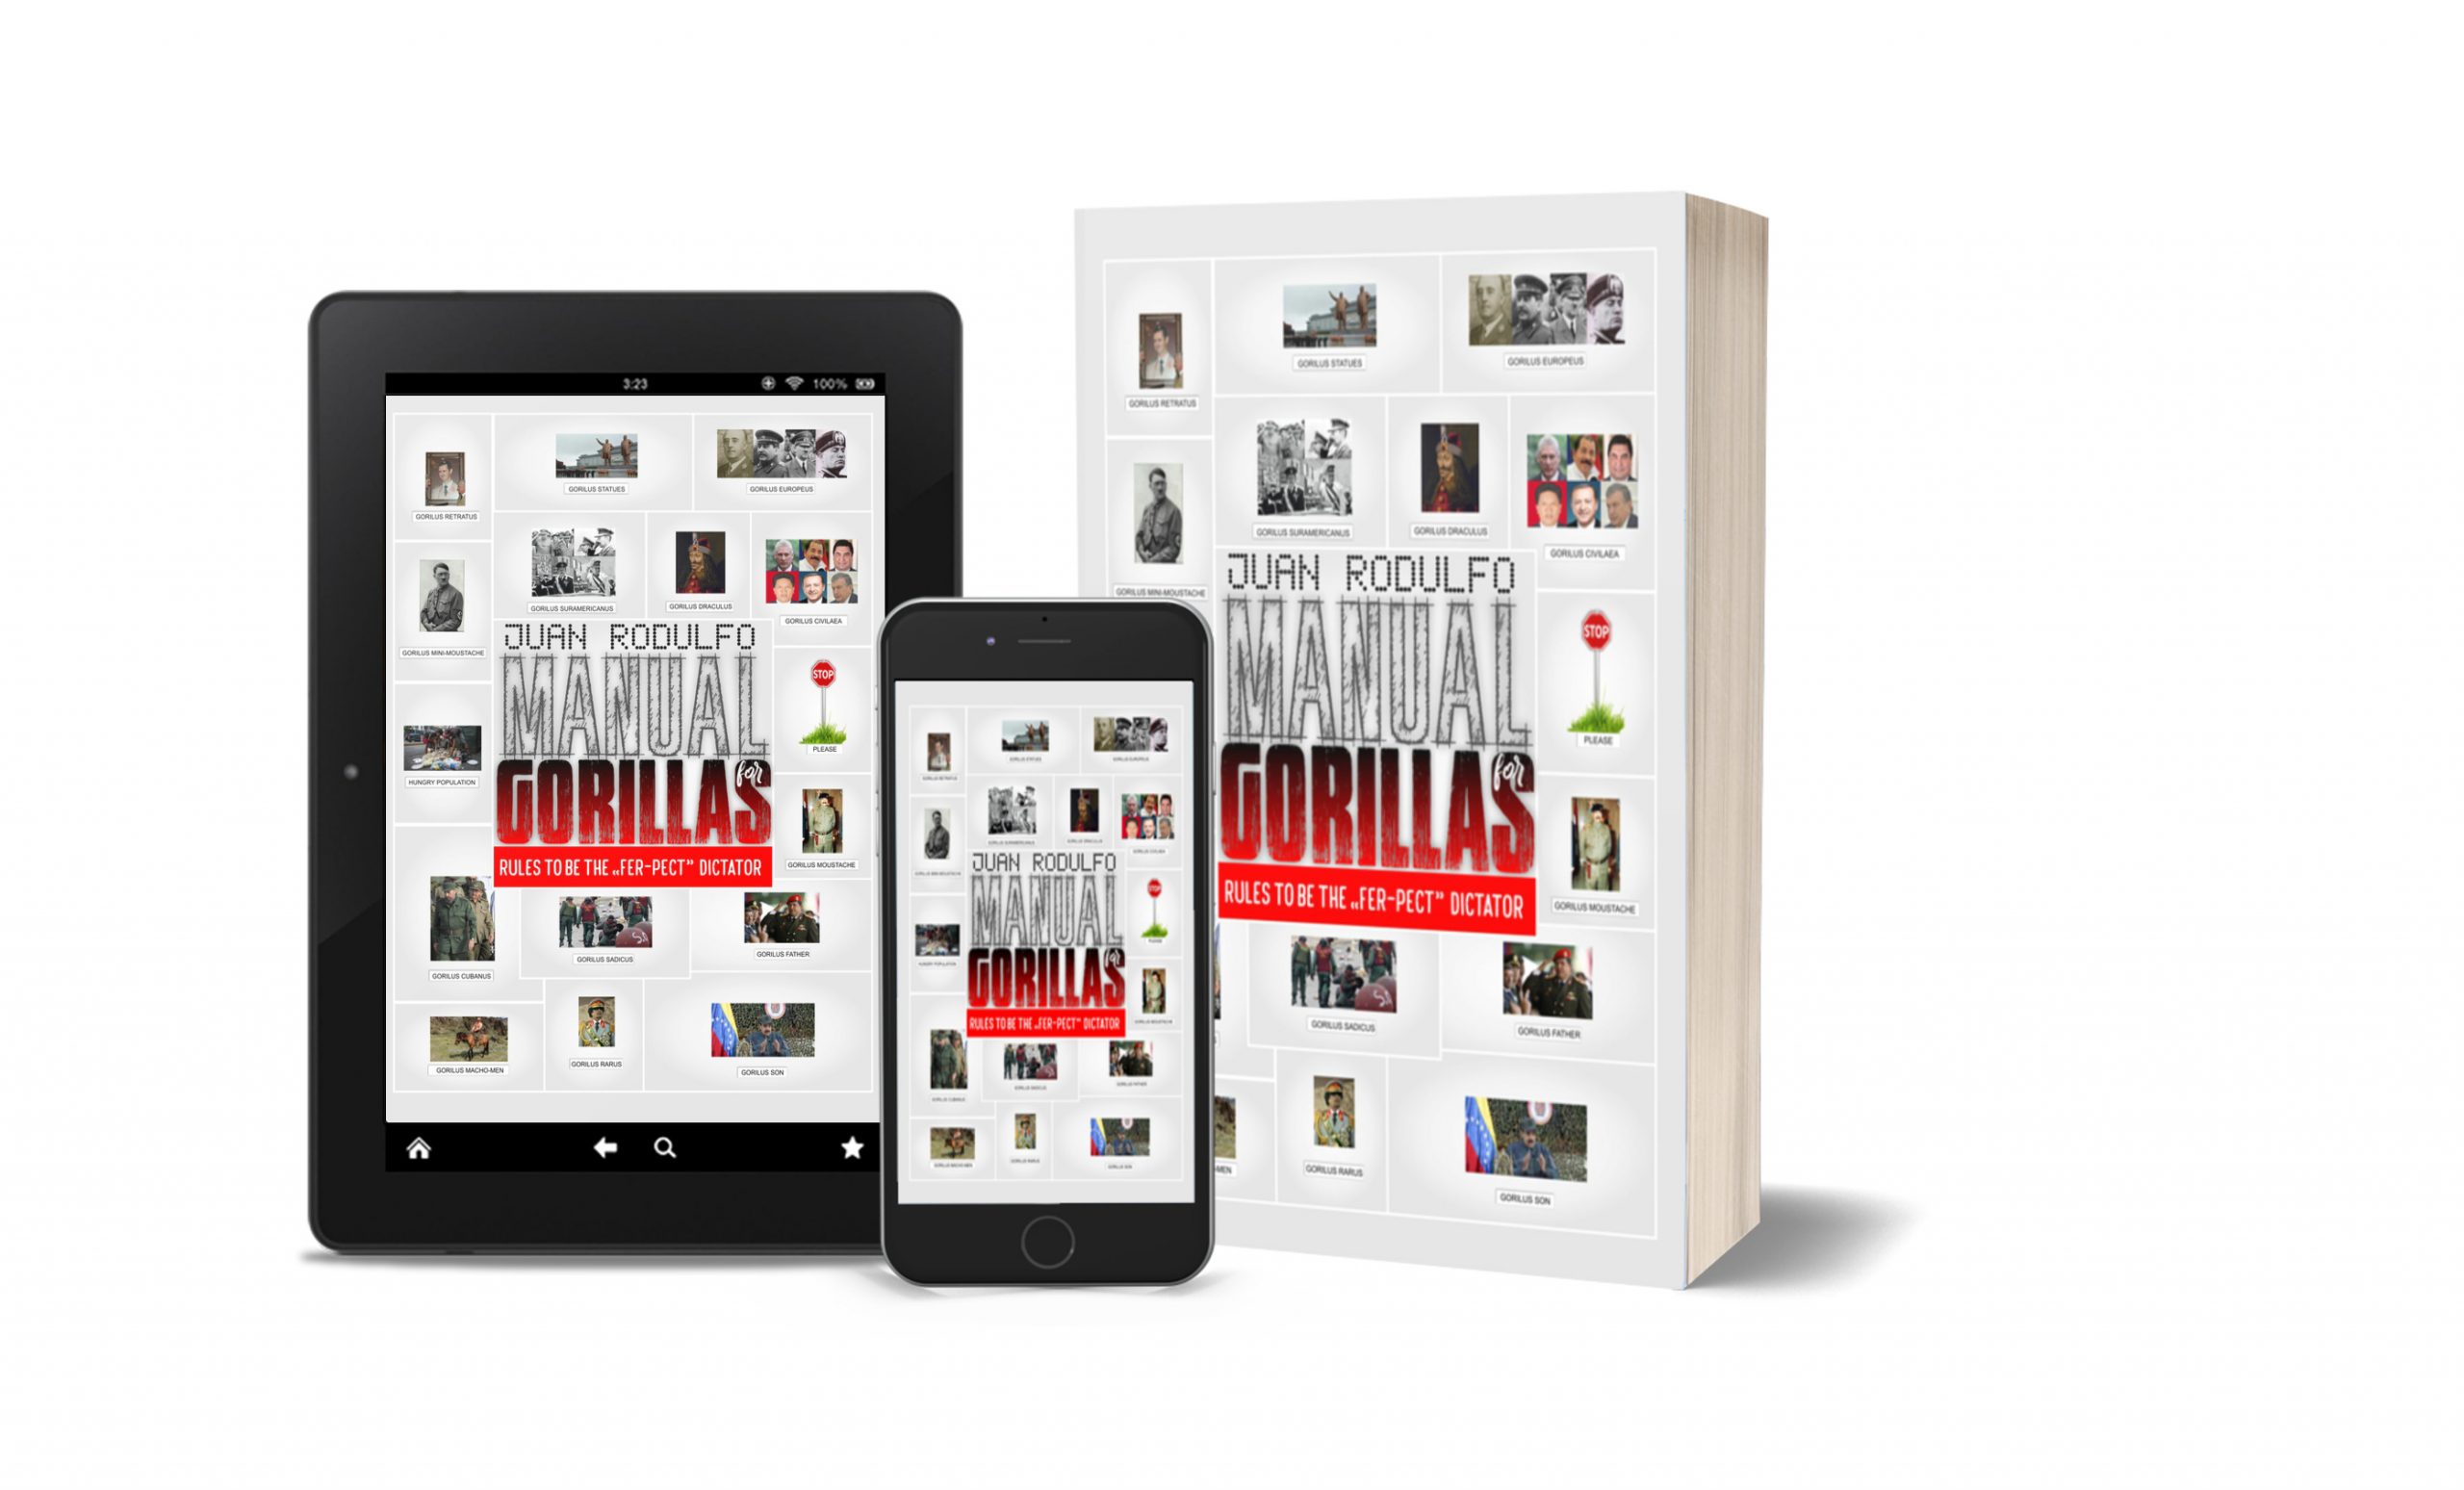 Manual for Gorillas by Juan Rodulfo